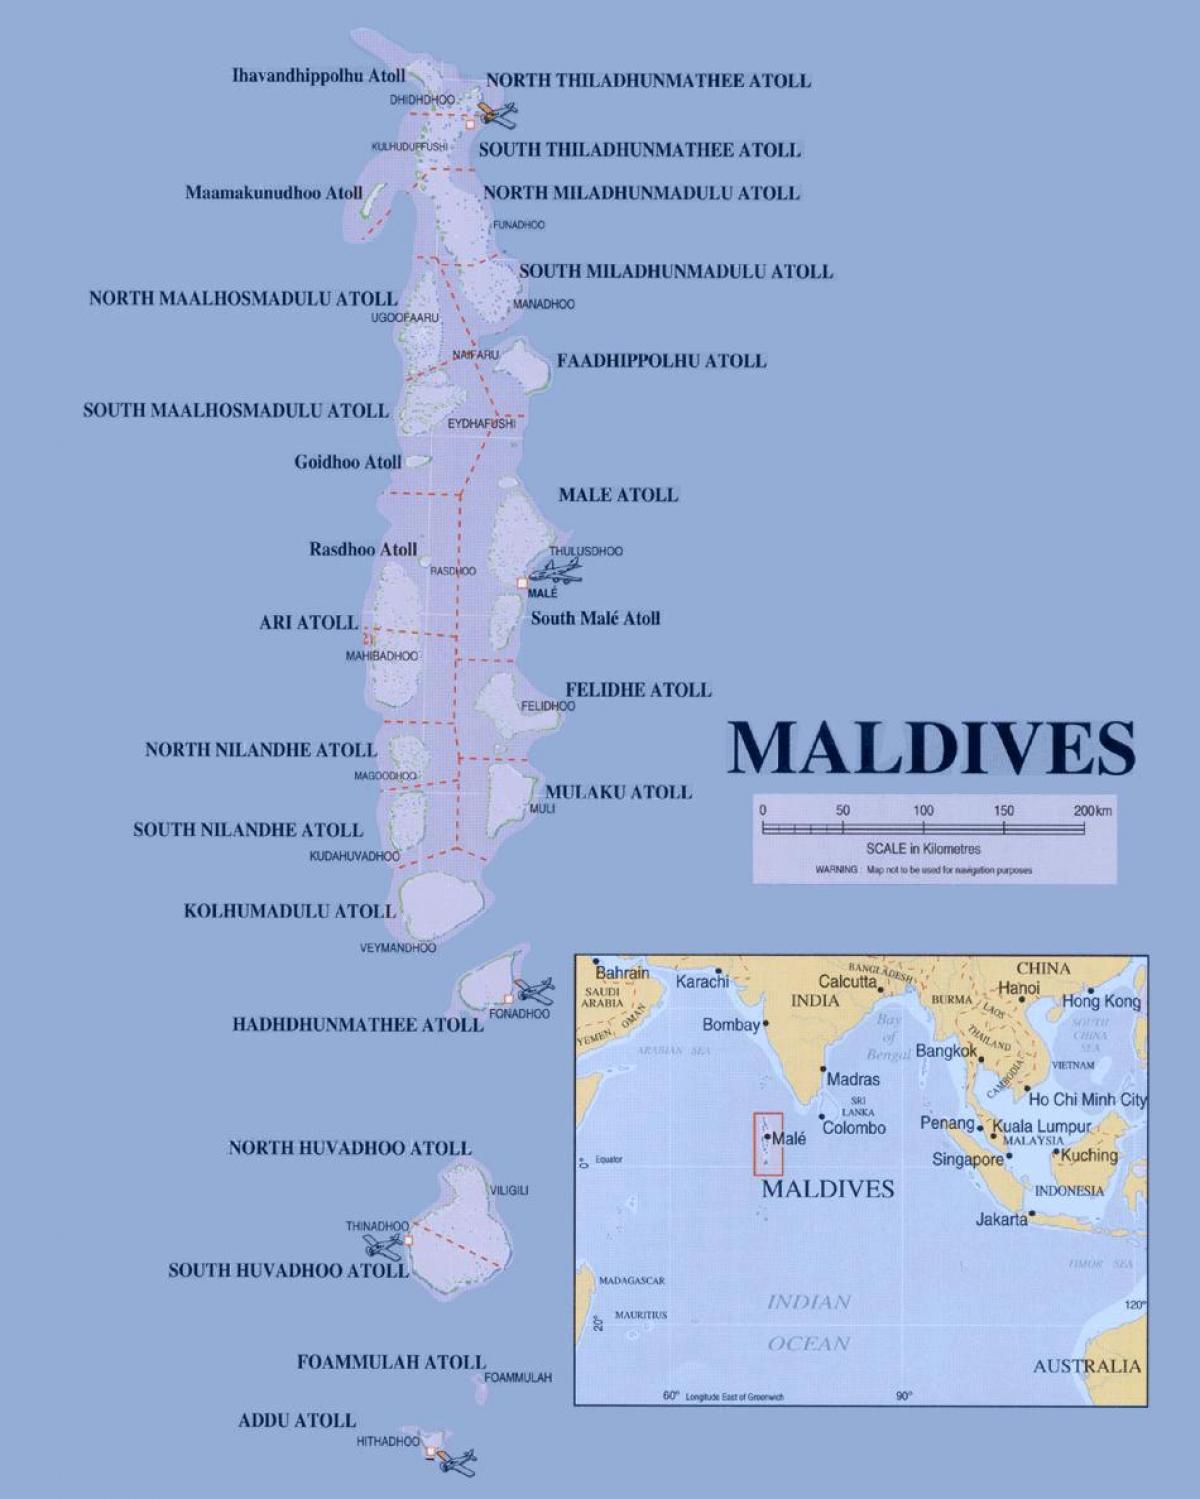 zemljevid, ki prikazuje maldivi